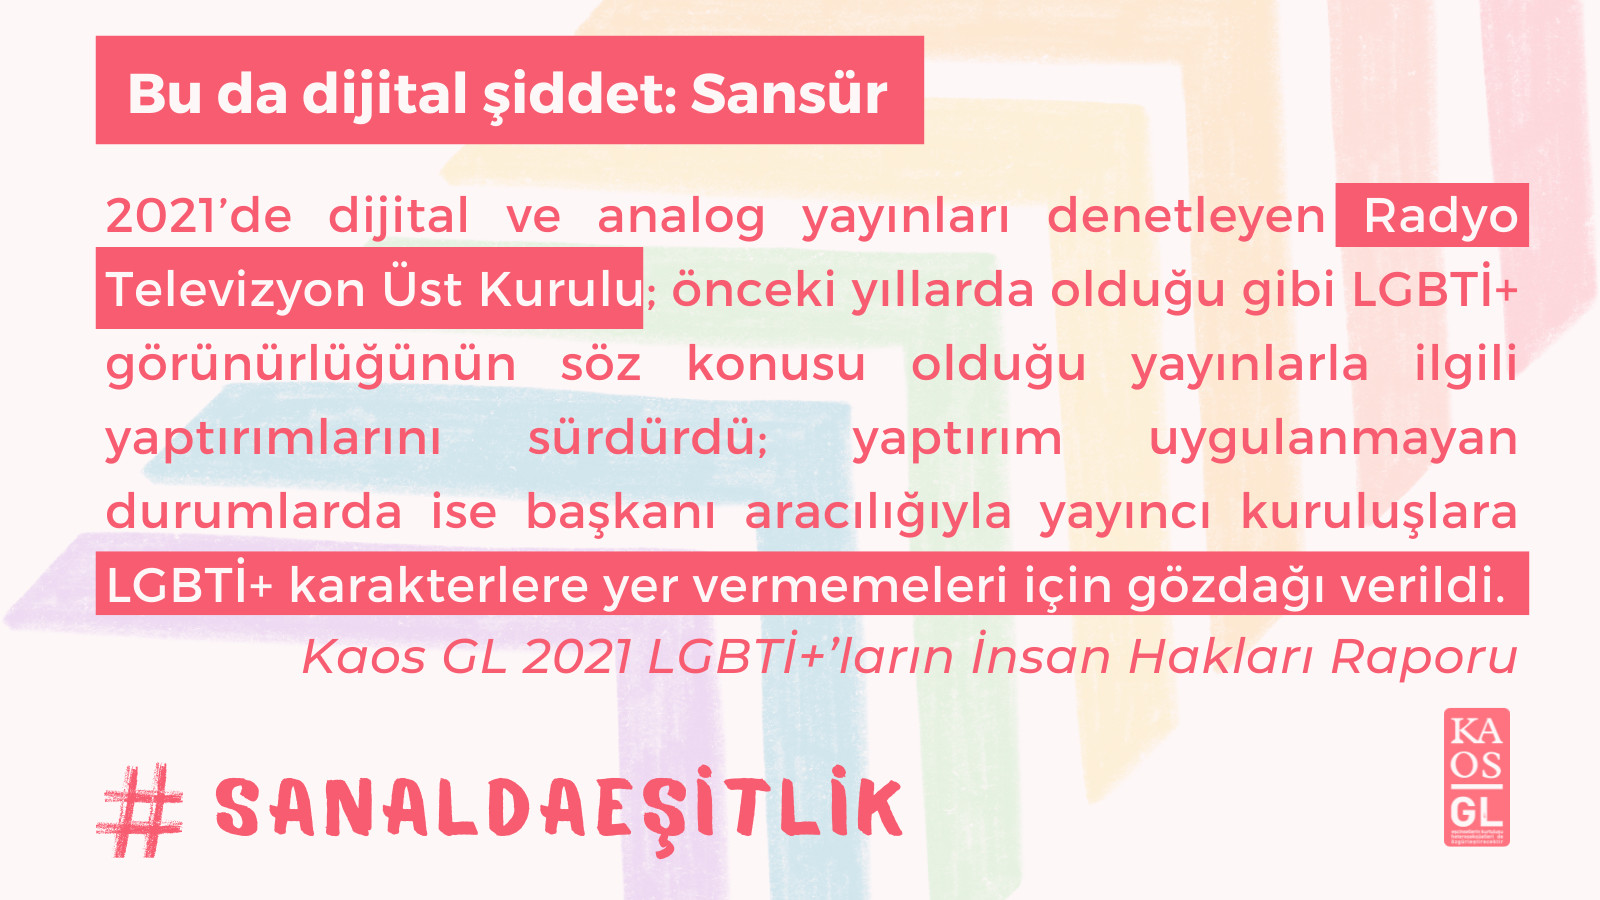 Bu da dijital şiddet: RTÜK’ün LGBTİ+’ları hedef göstermesi ve sansür! Kaos GL - LGBTİ+ Haber Portalı